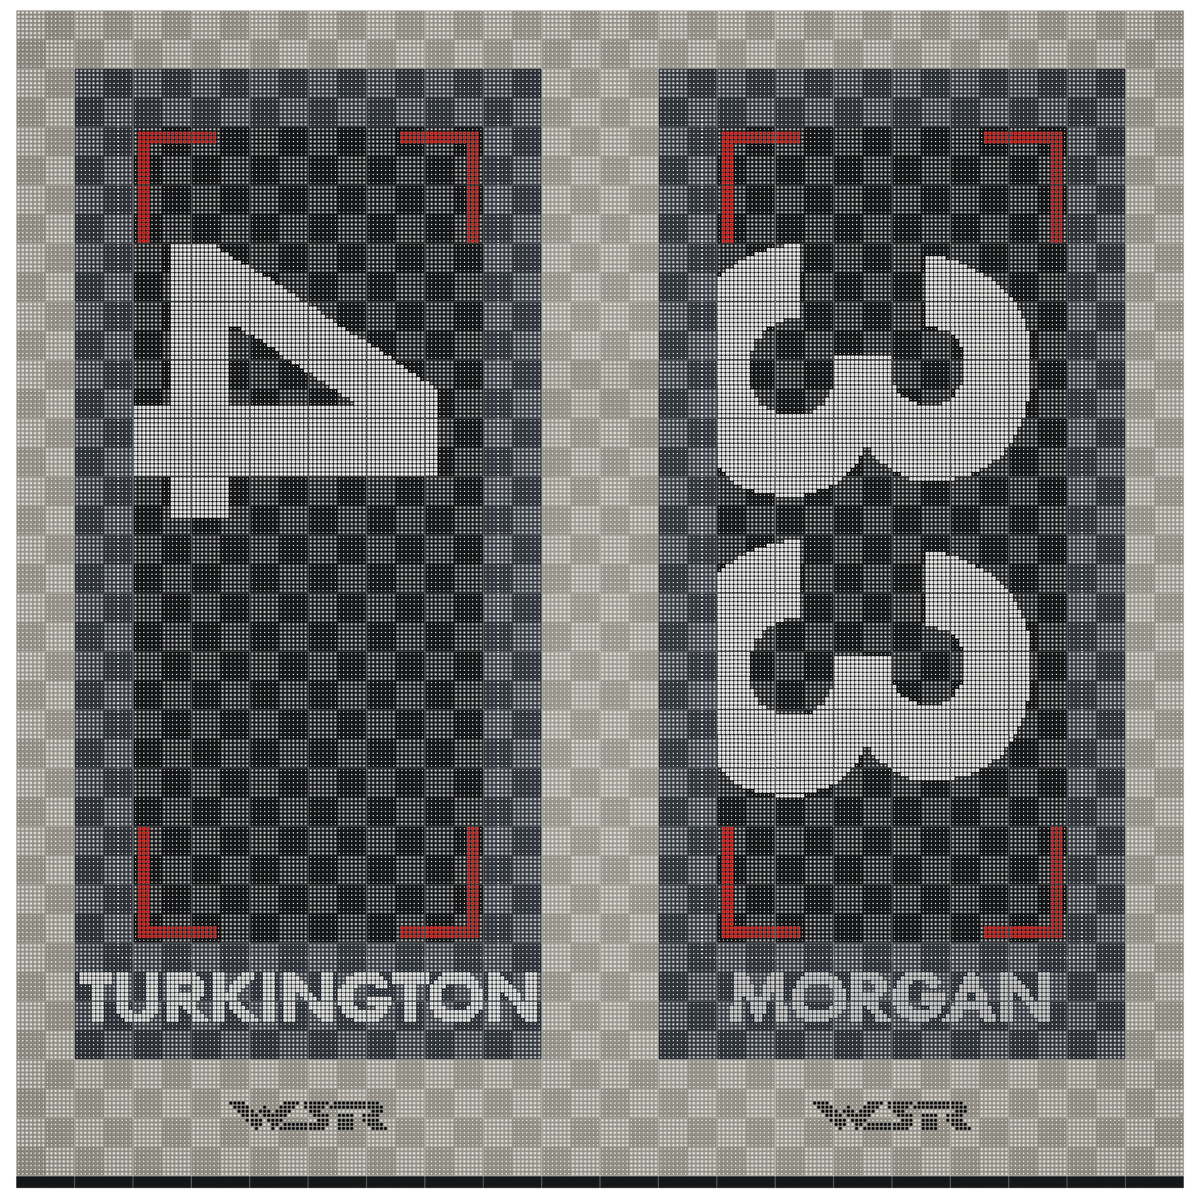 West Surrey Racing - Colin Turkington and Adam Morgan - Double Garage Floor Pack Garage Flooring Pack Versoflor   